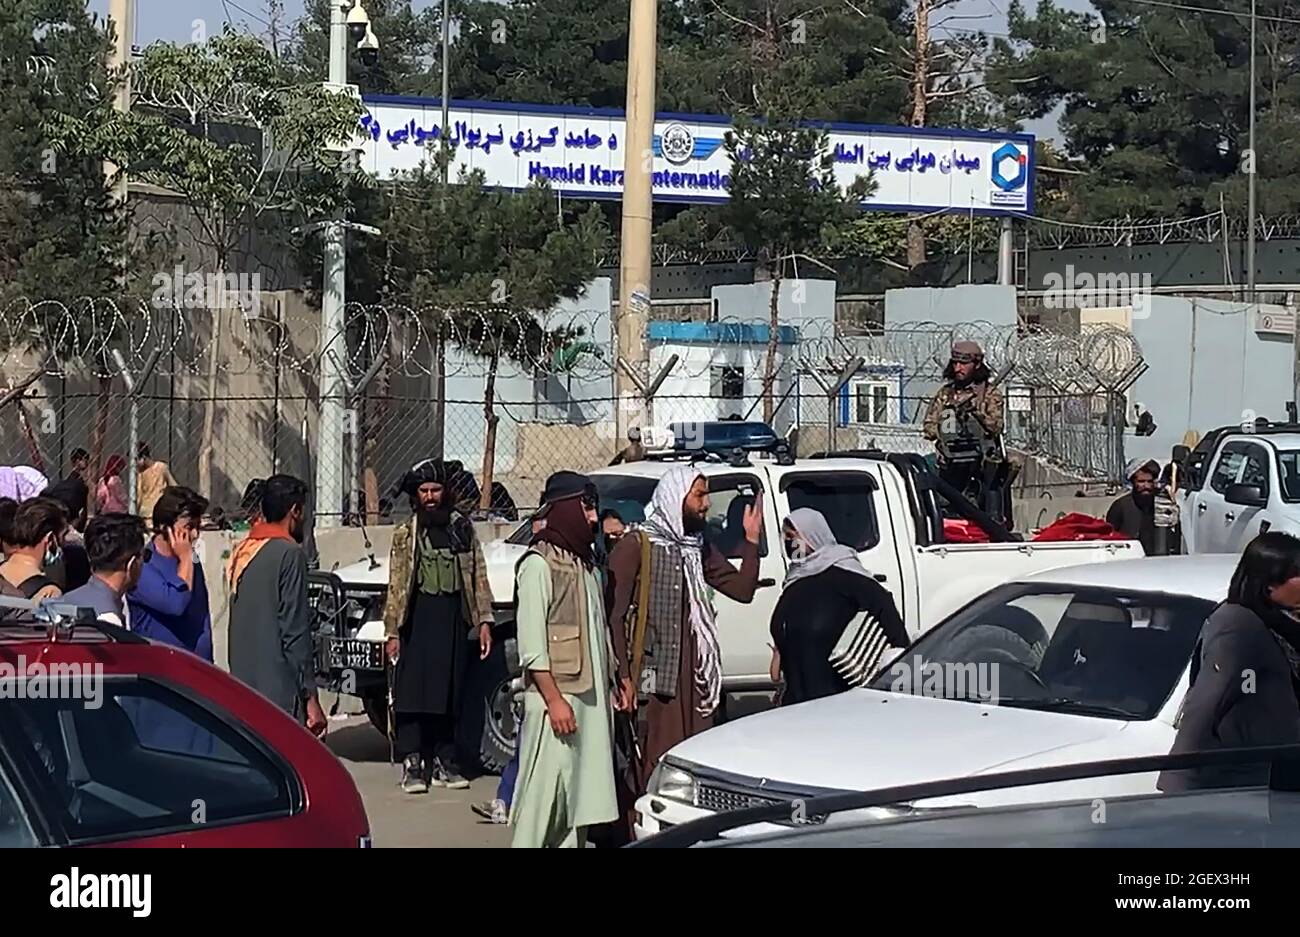 Kabul, Afganistán. 21st de agosto de 2021. Combatientes talibanes vigilan mientras los afganos se reúnen fuera del aeropuerto internacional Hamid Karzai para huir del país, en Kabul, Afganistán, el sábado 21 de agosto, 2021. Foto de Bashir Darwish/ Crédito: UPI/Alamy Live News Foto de stock